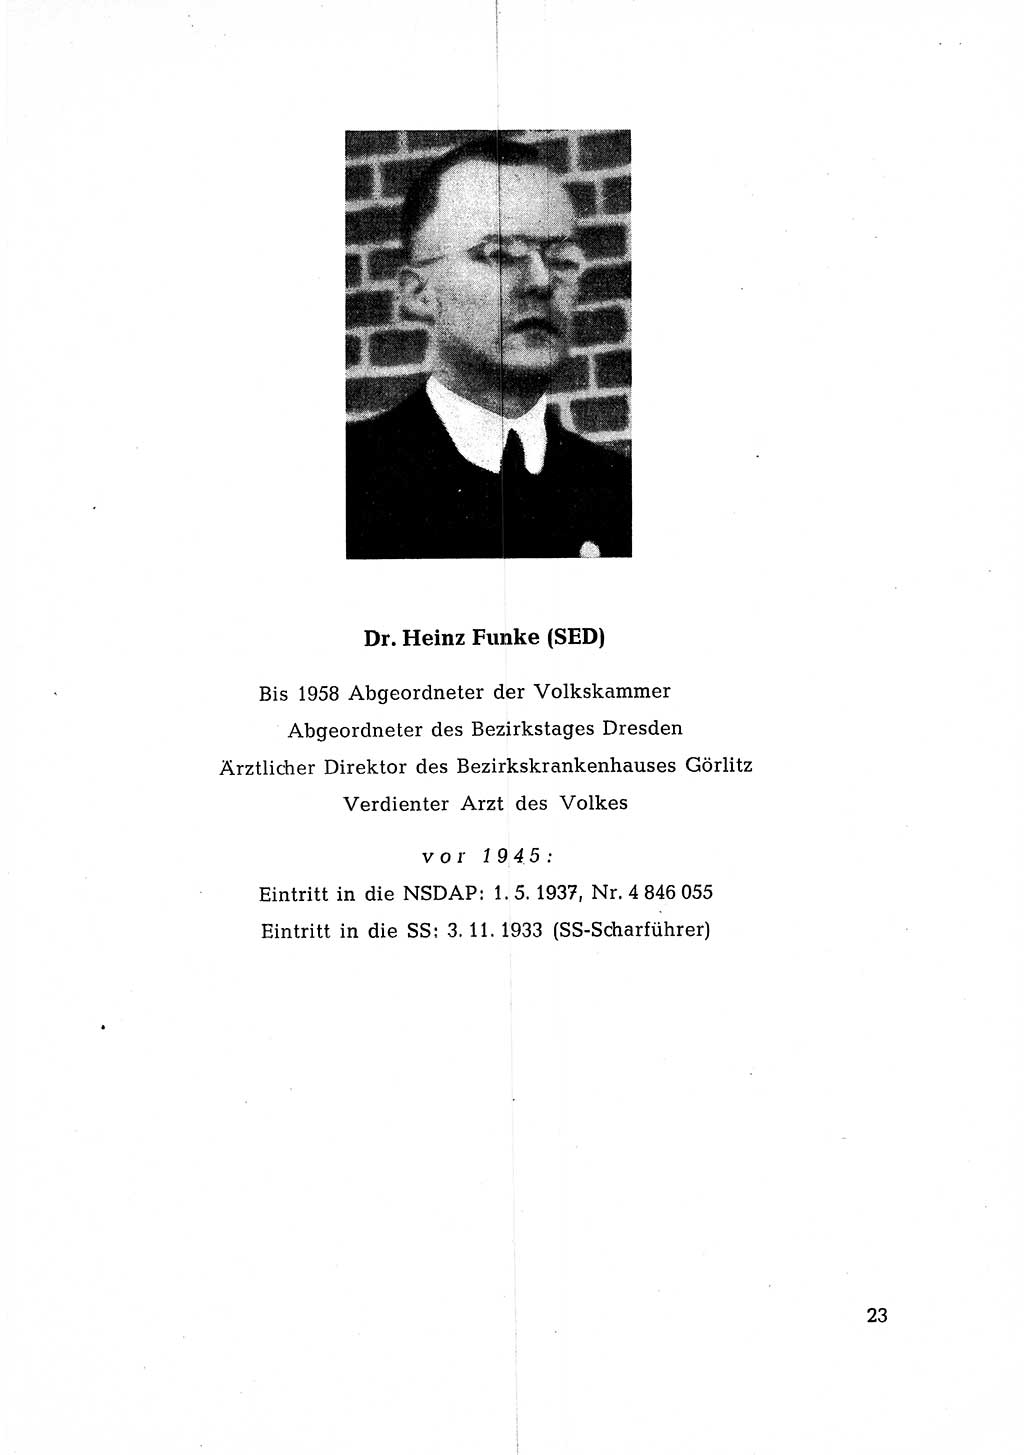 Ehemalige Nationalsozialisten in Pankows Diensten [Deutsche Demokratische Republik (DDR)] 1965, Seite 23 (Ehem. Nat.-Soz. DDR 1965, S. 23)